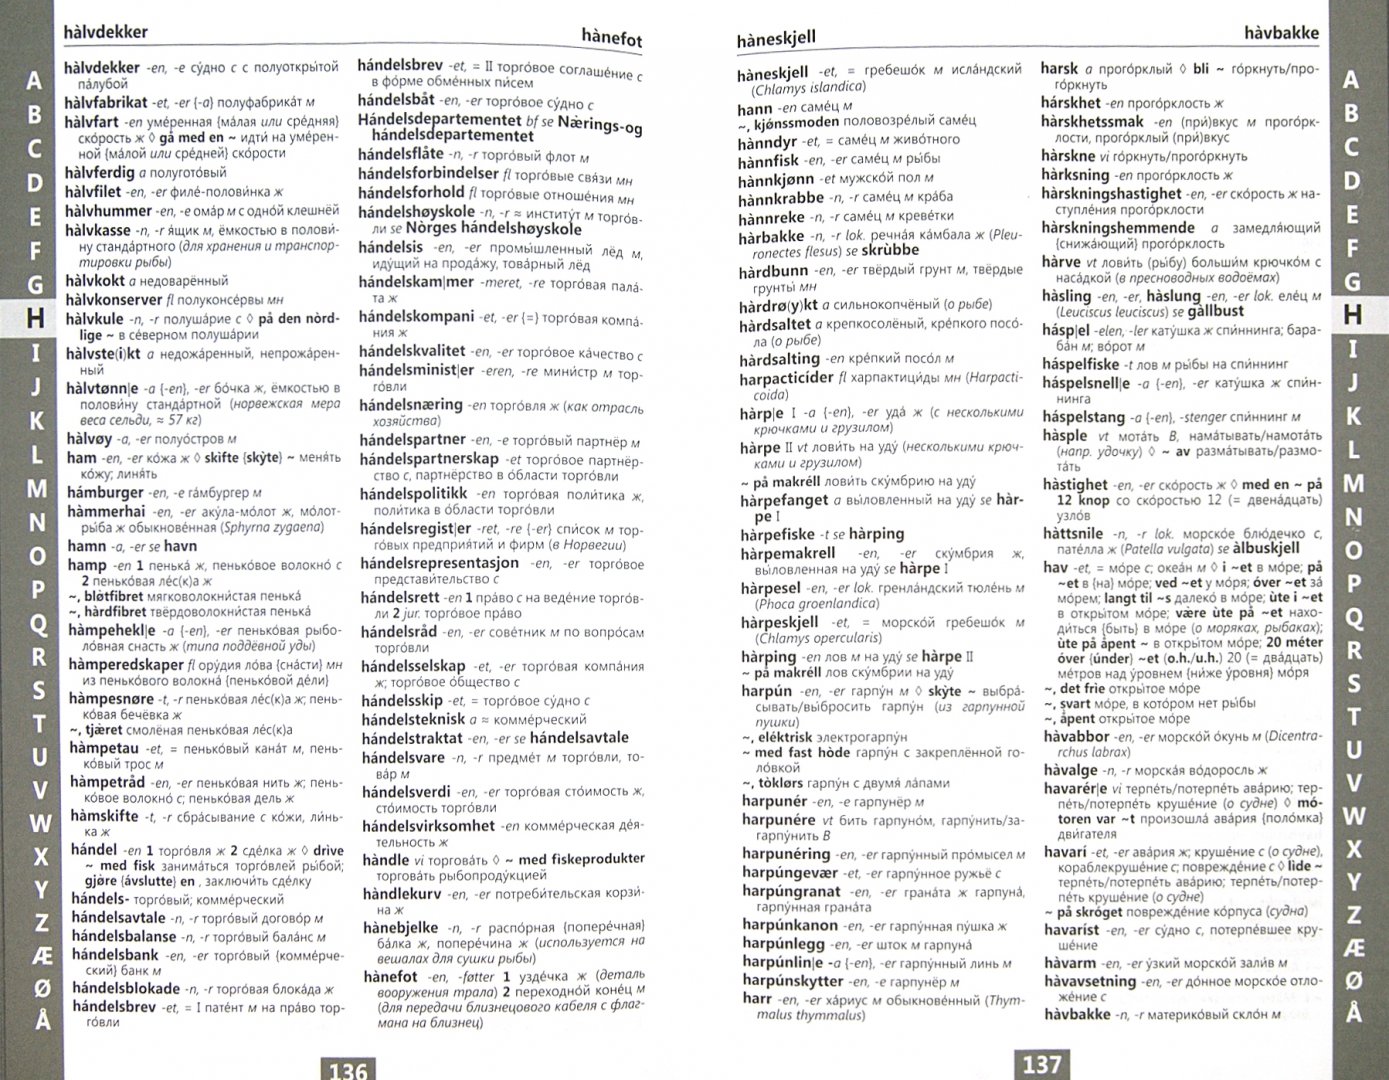 Иллюстрация 1 из 9 для Норвежско-русский словарь по рыболовству - Нильссен, Лукашева | Лабиринт - книги. Источник: Лабиринт